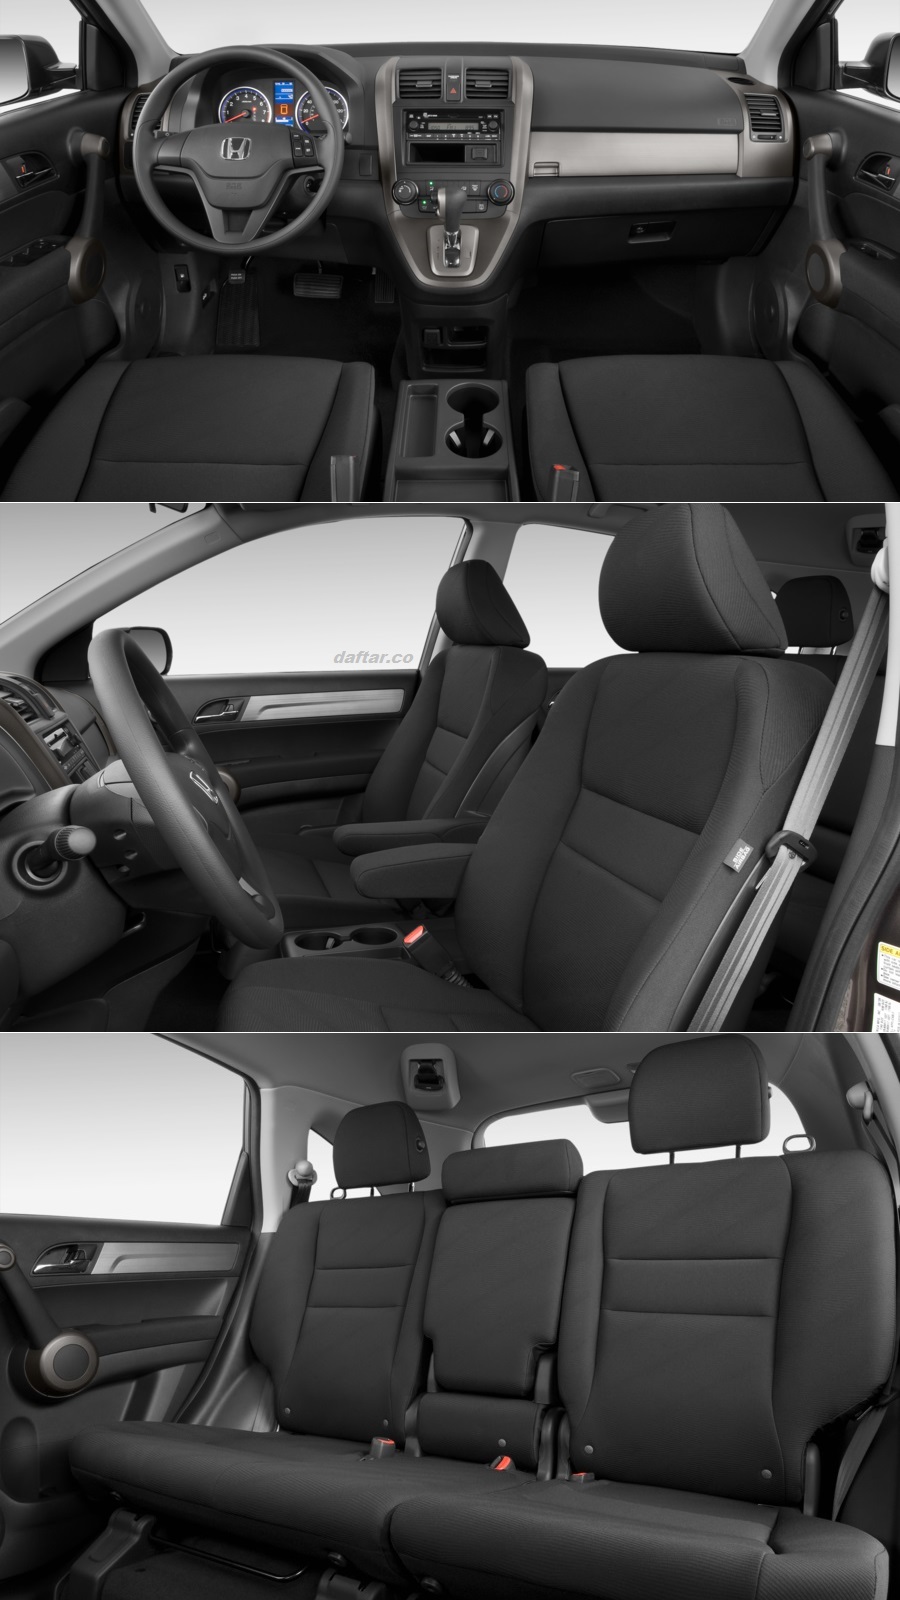 Interior Honda CRV gen 3 2011 Dahsboard Jok Door Trim